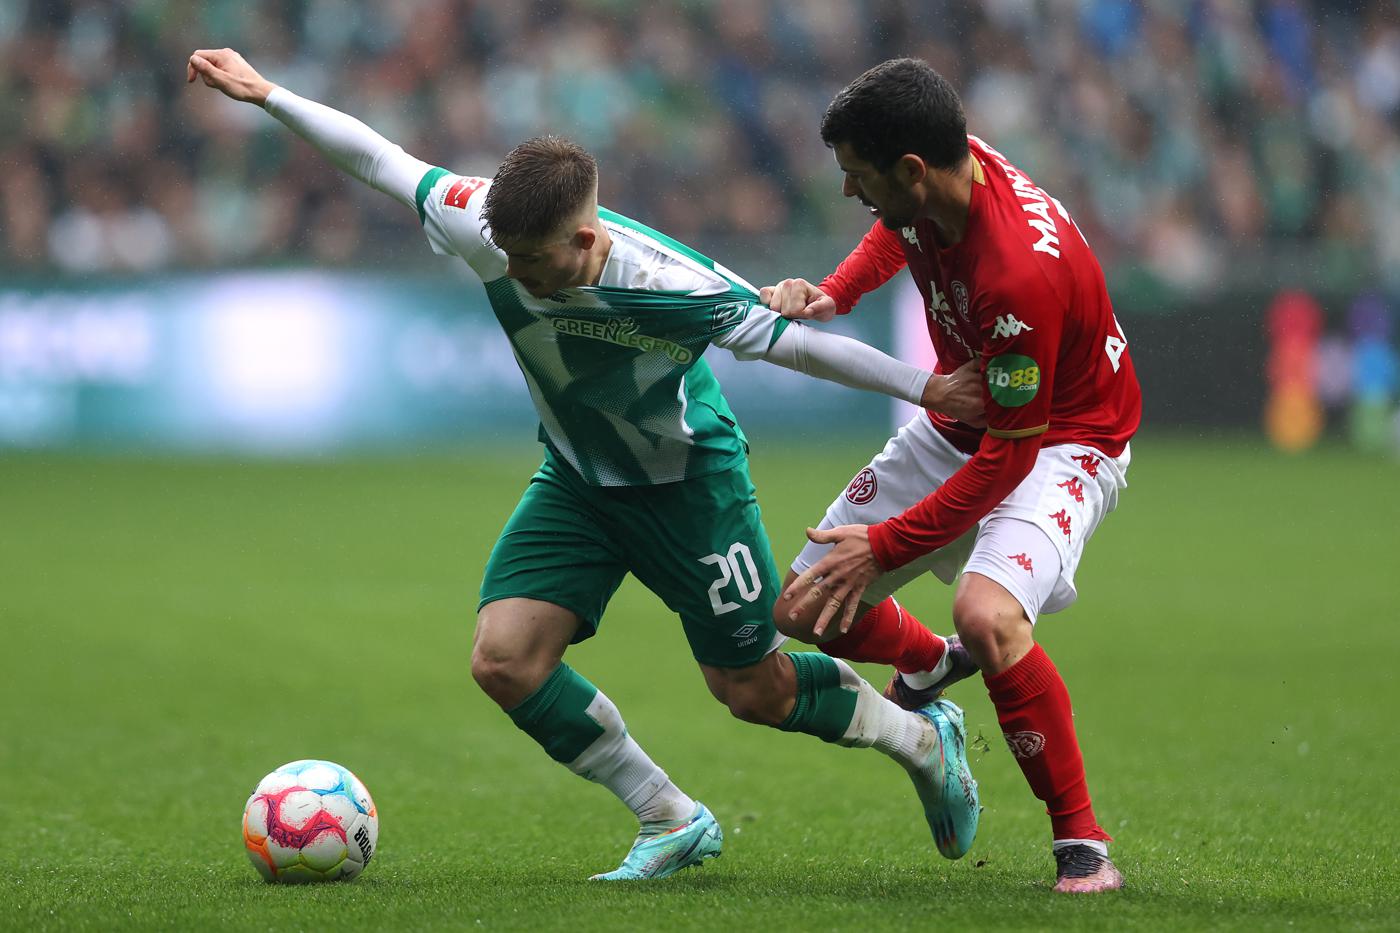 Mainz - Werder - 2:2. German Championship, round 27. Match review, statistics.